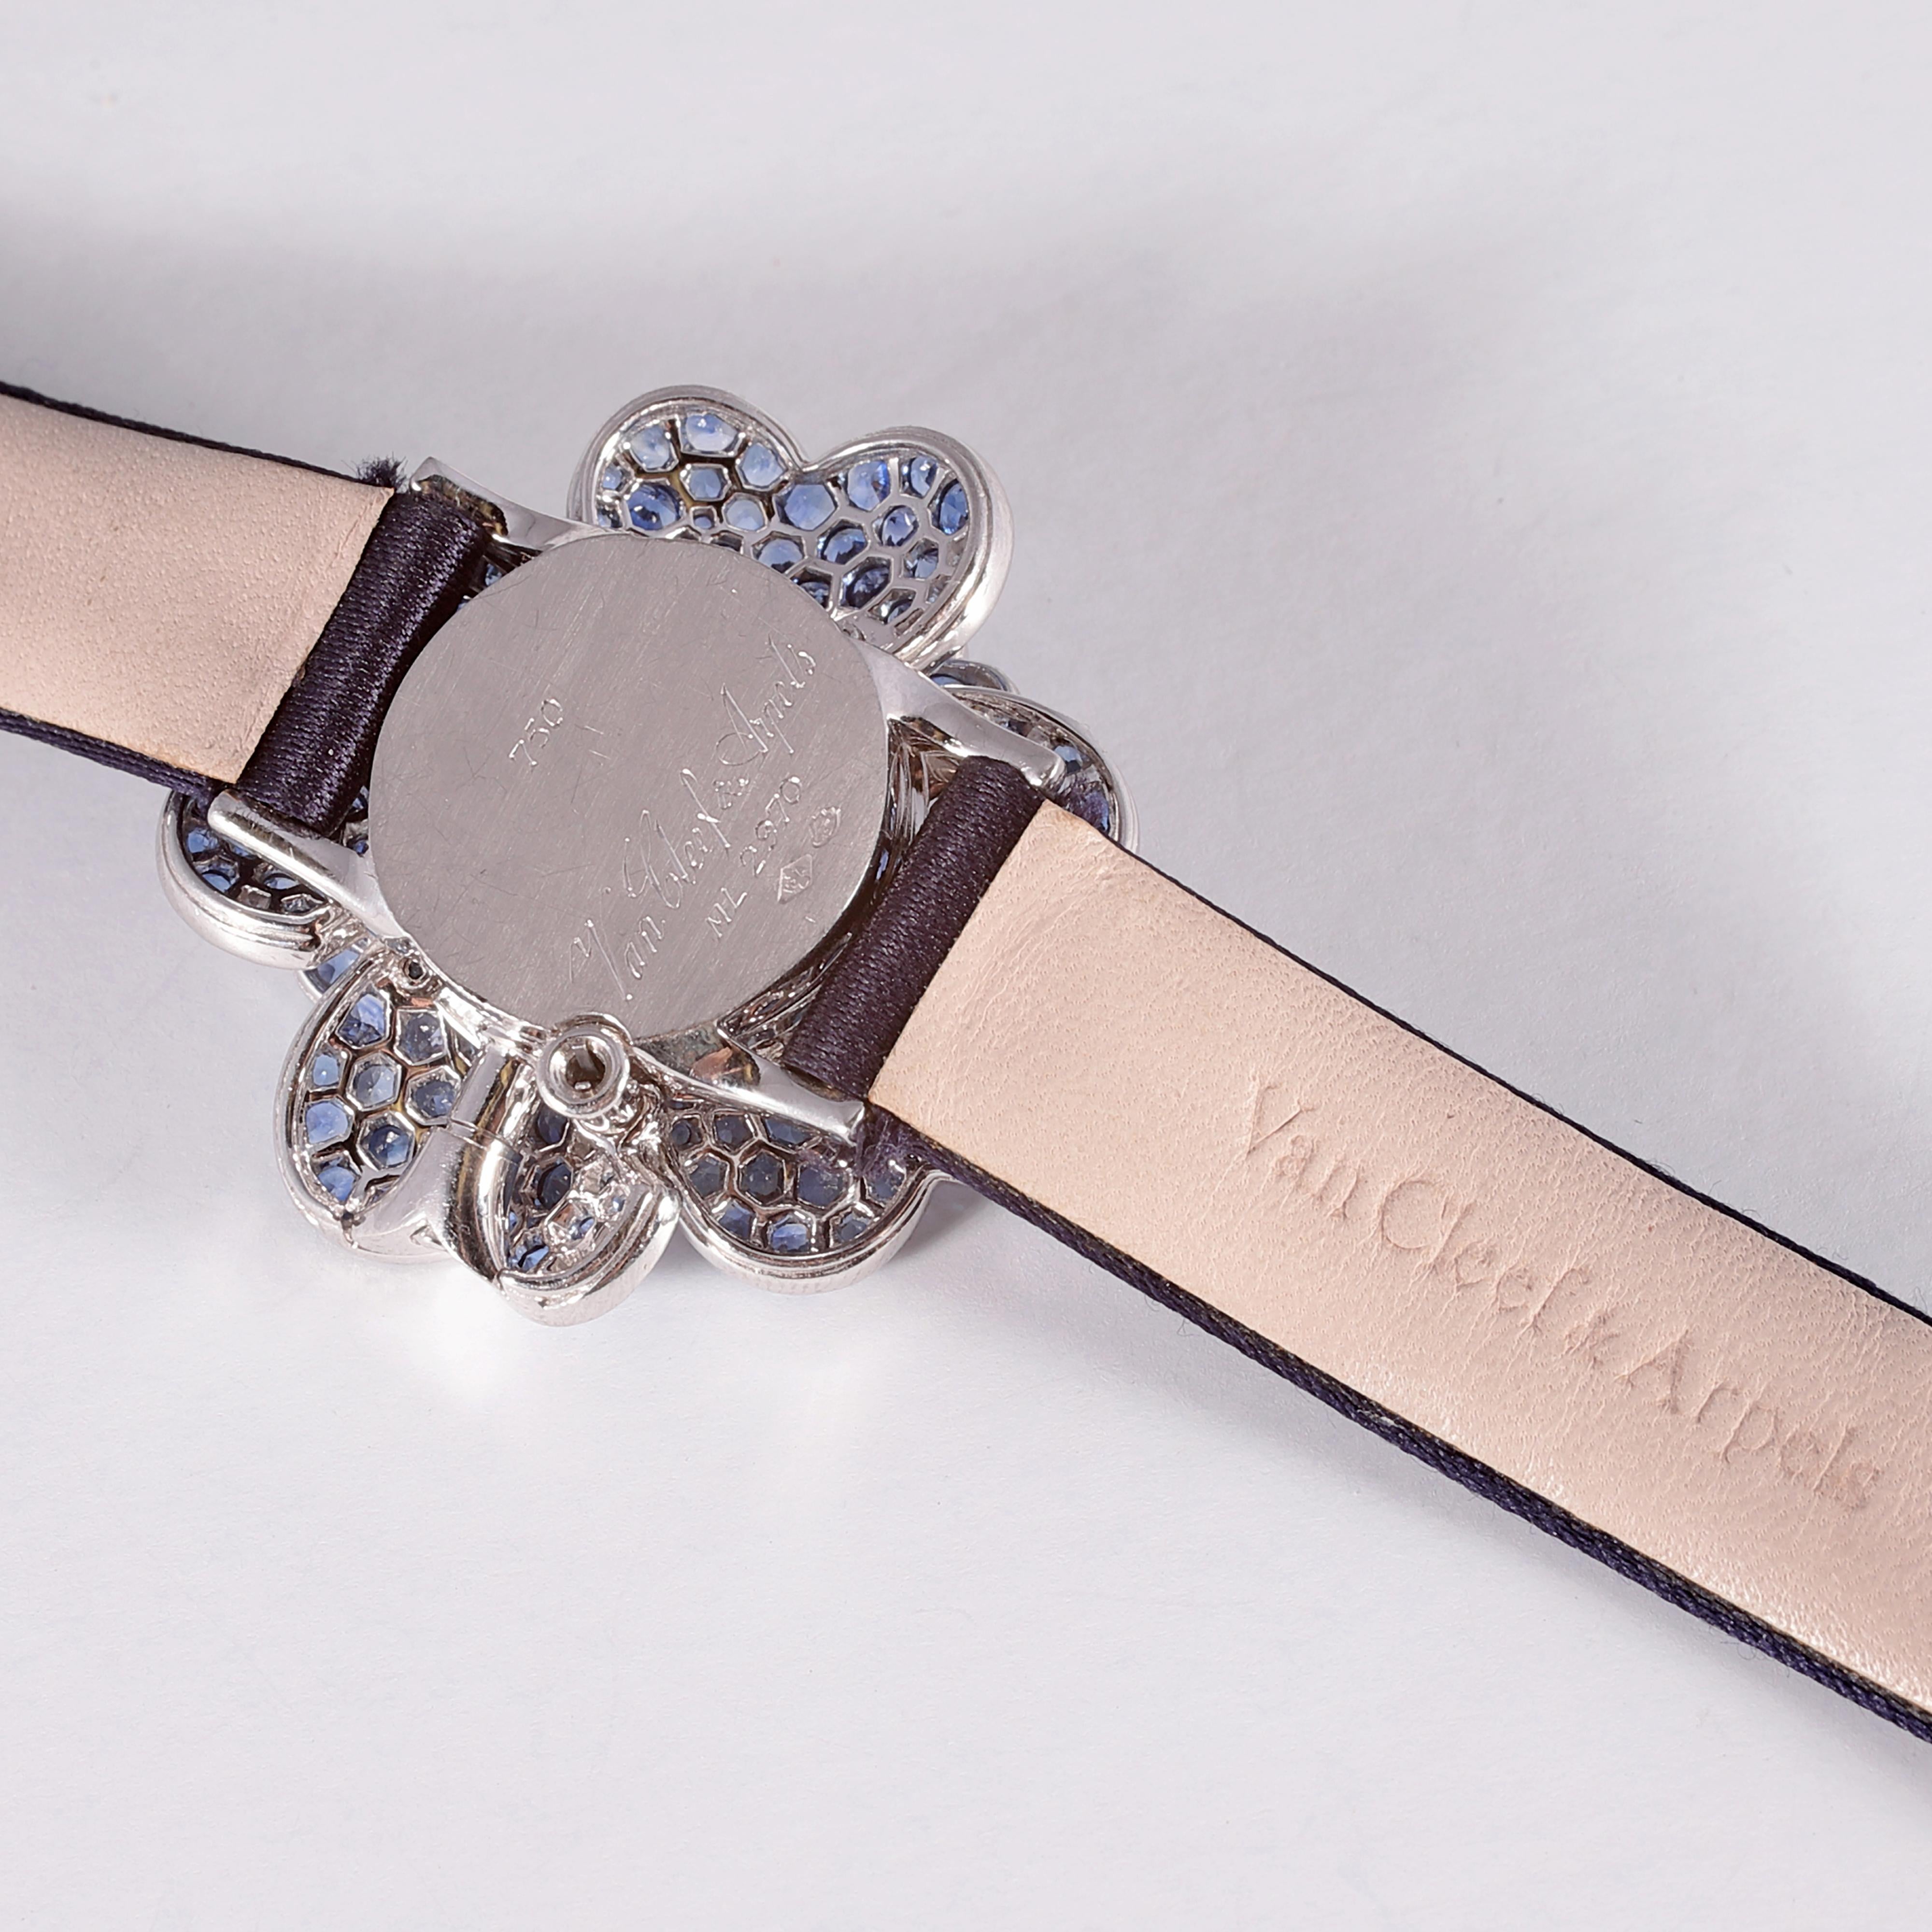 Diese Van Cleef & Arpels Cosmos Armbanduhr ist wie ein geheimer Garten voller Blumen an Ihrem Handgelenk!   
Die legendäre Geschichte der Schmuck- und Uhrenmanufaktur Van Cleef & Arpels begann mit der Liebesgeschichte zwischen Alfred Van Cleef, dem